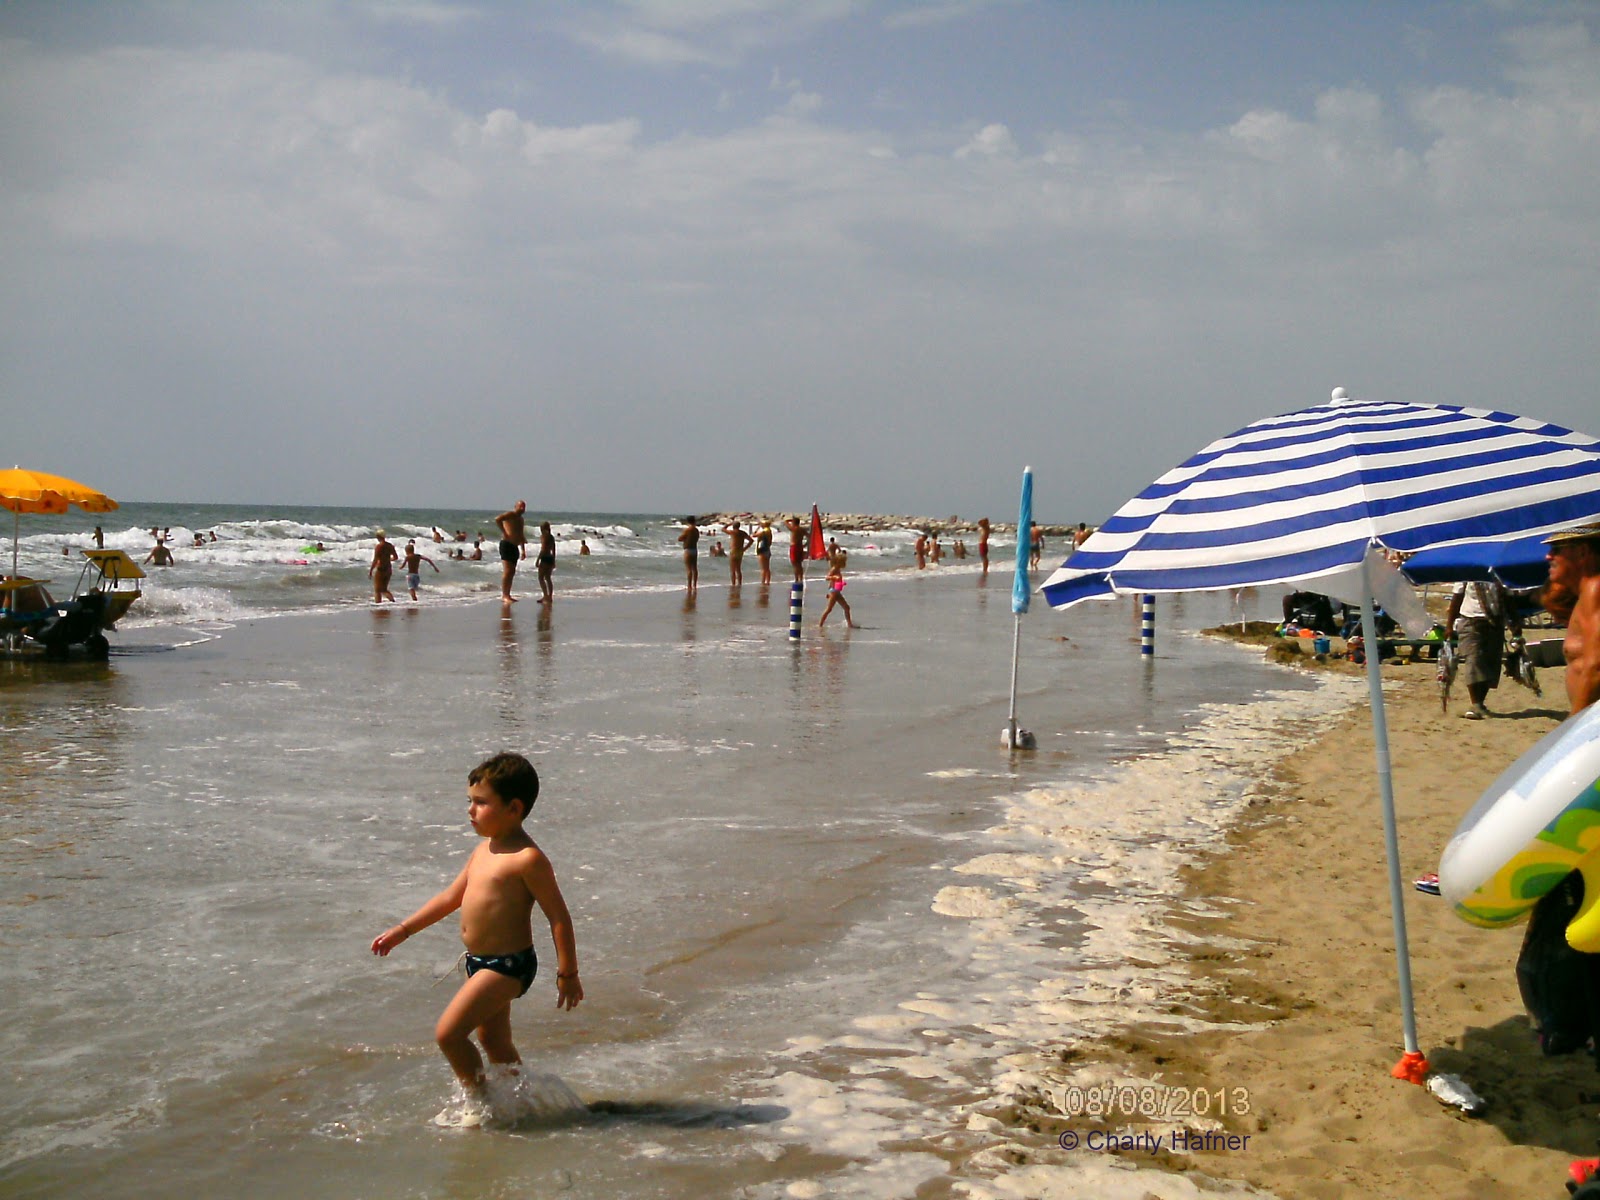 Cavallino beach II的照片 具有非常干净级别的清洁度